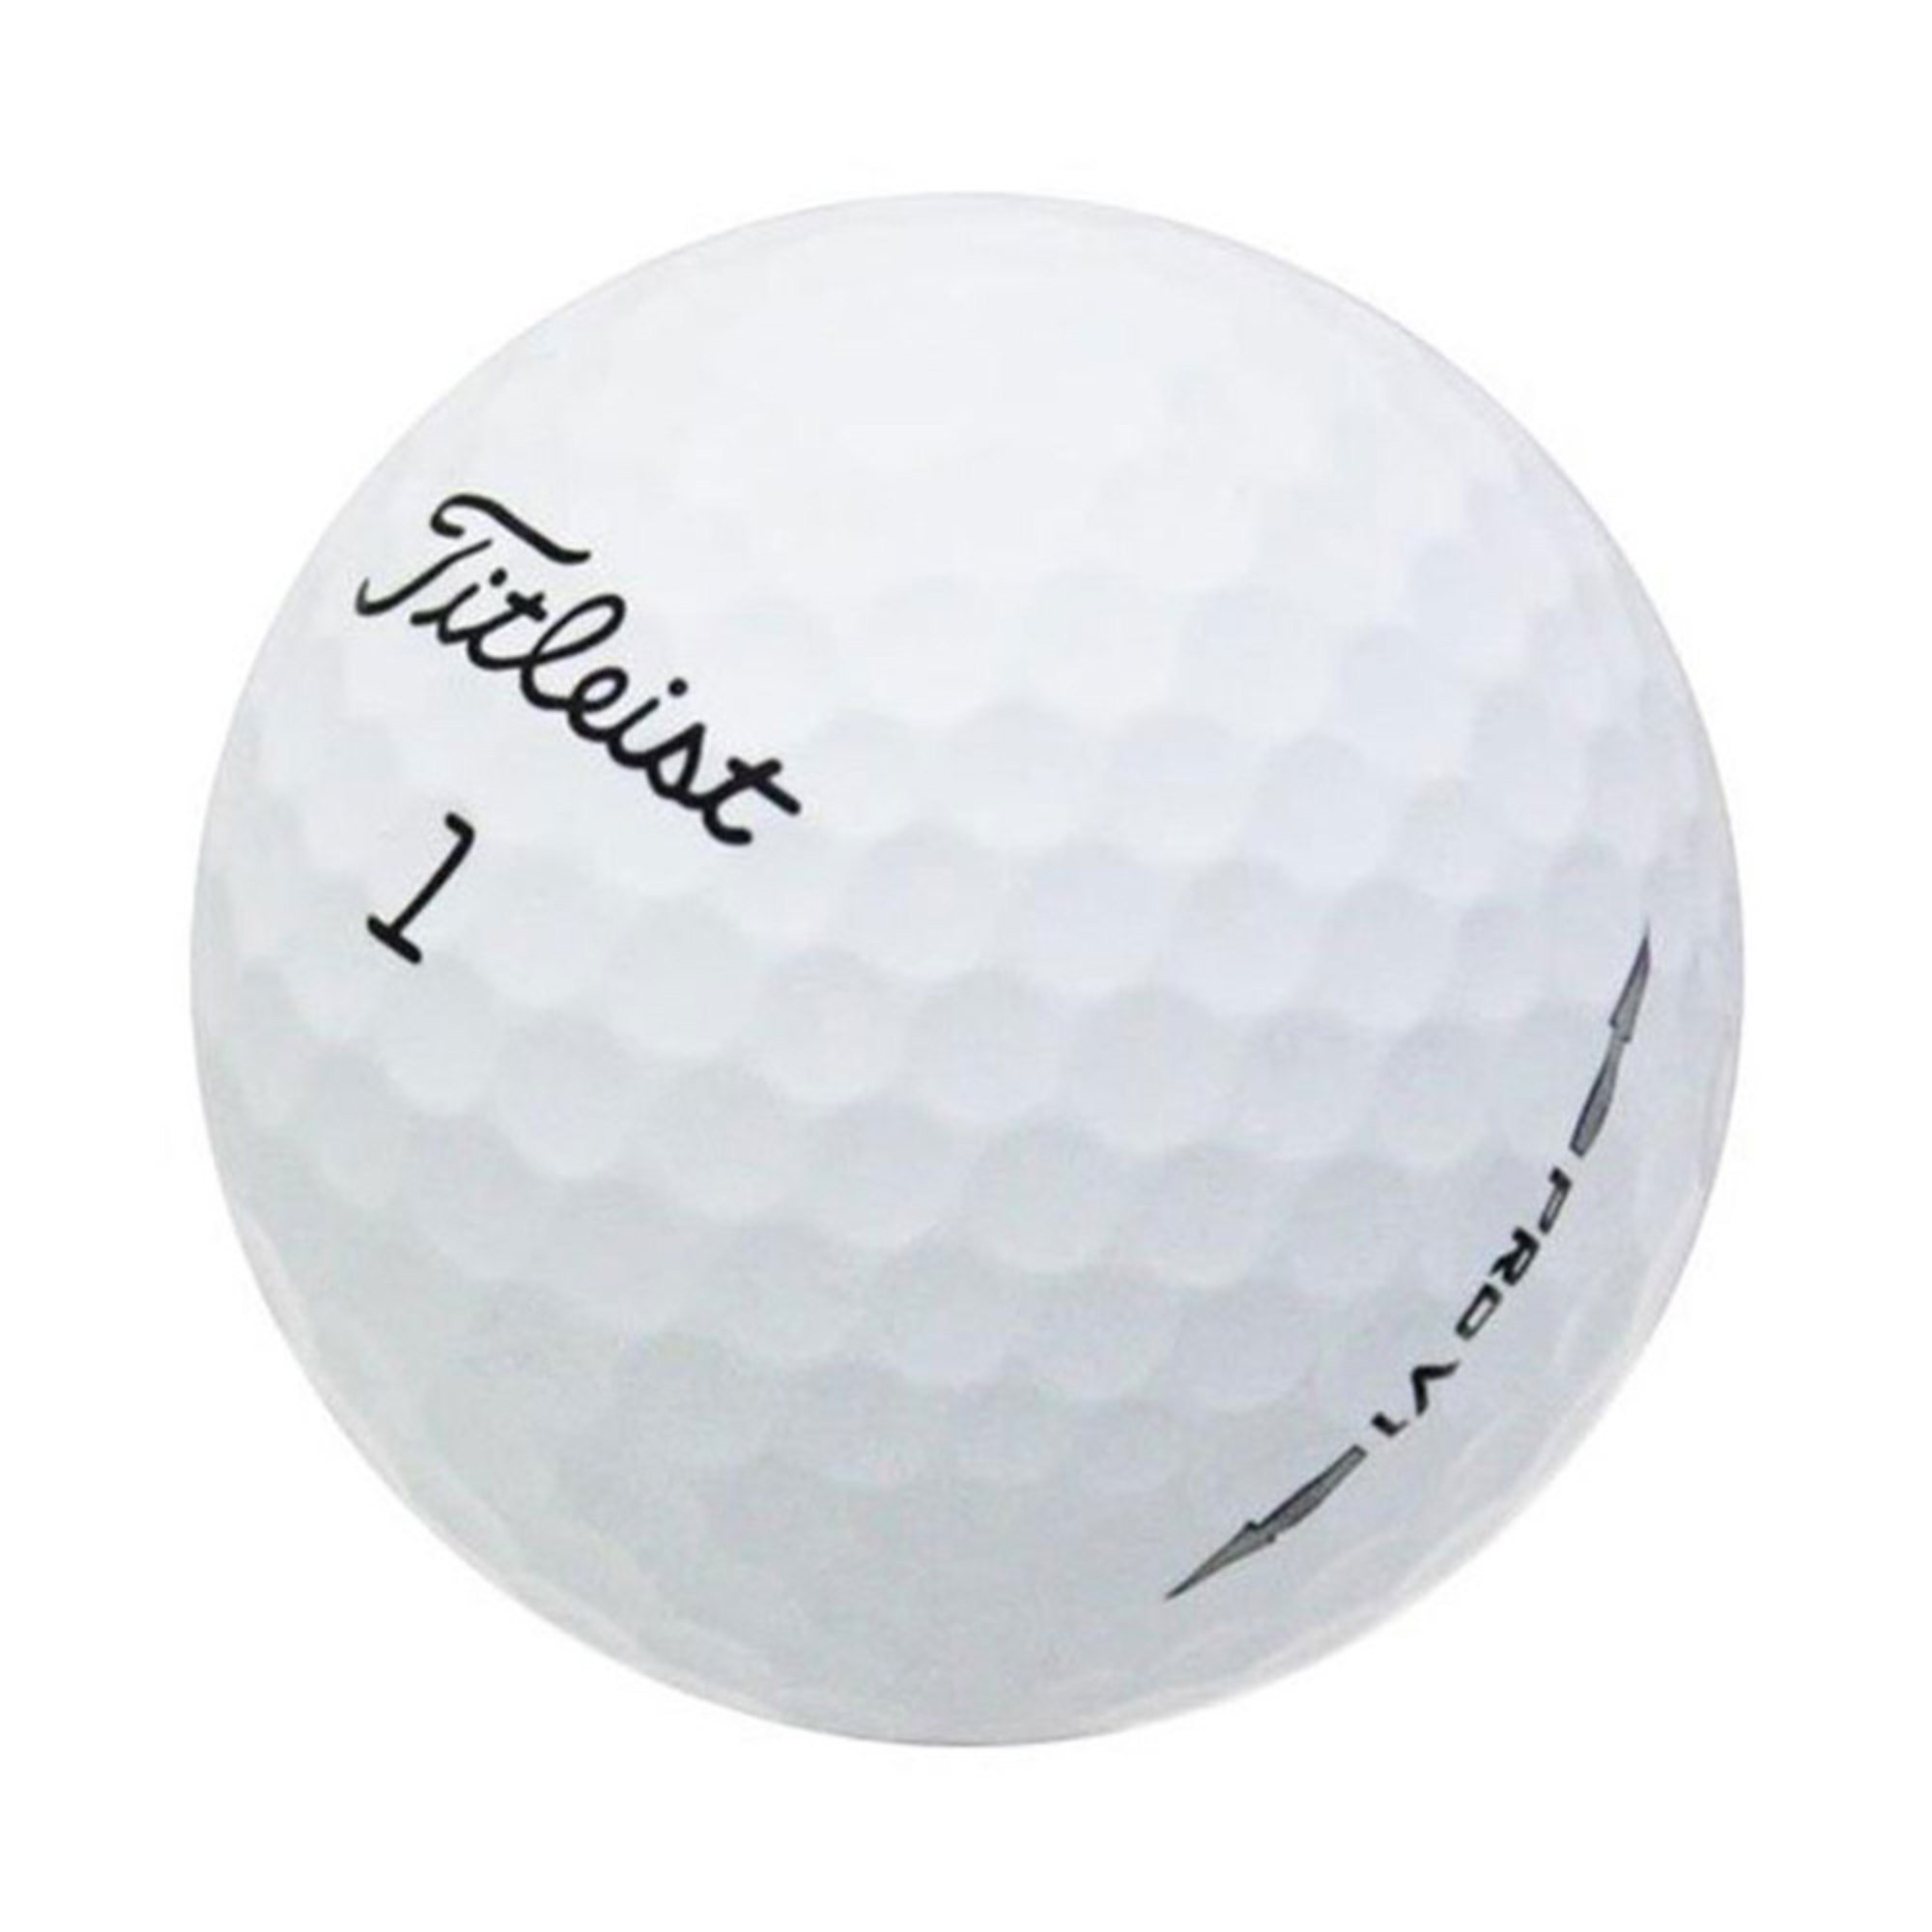 Titleist Prov1 Mint Recycled Golf Balls, 12-pack | Golf Balls - Shop ...